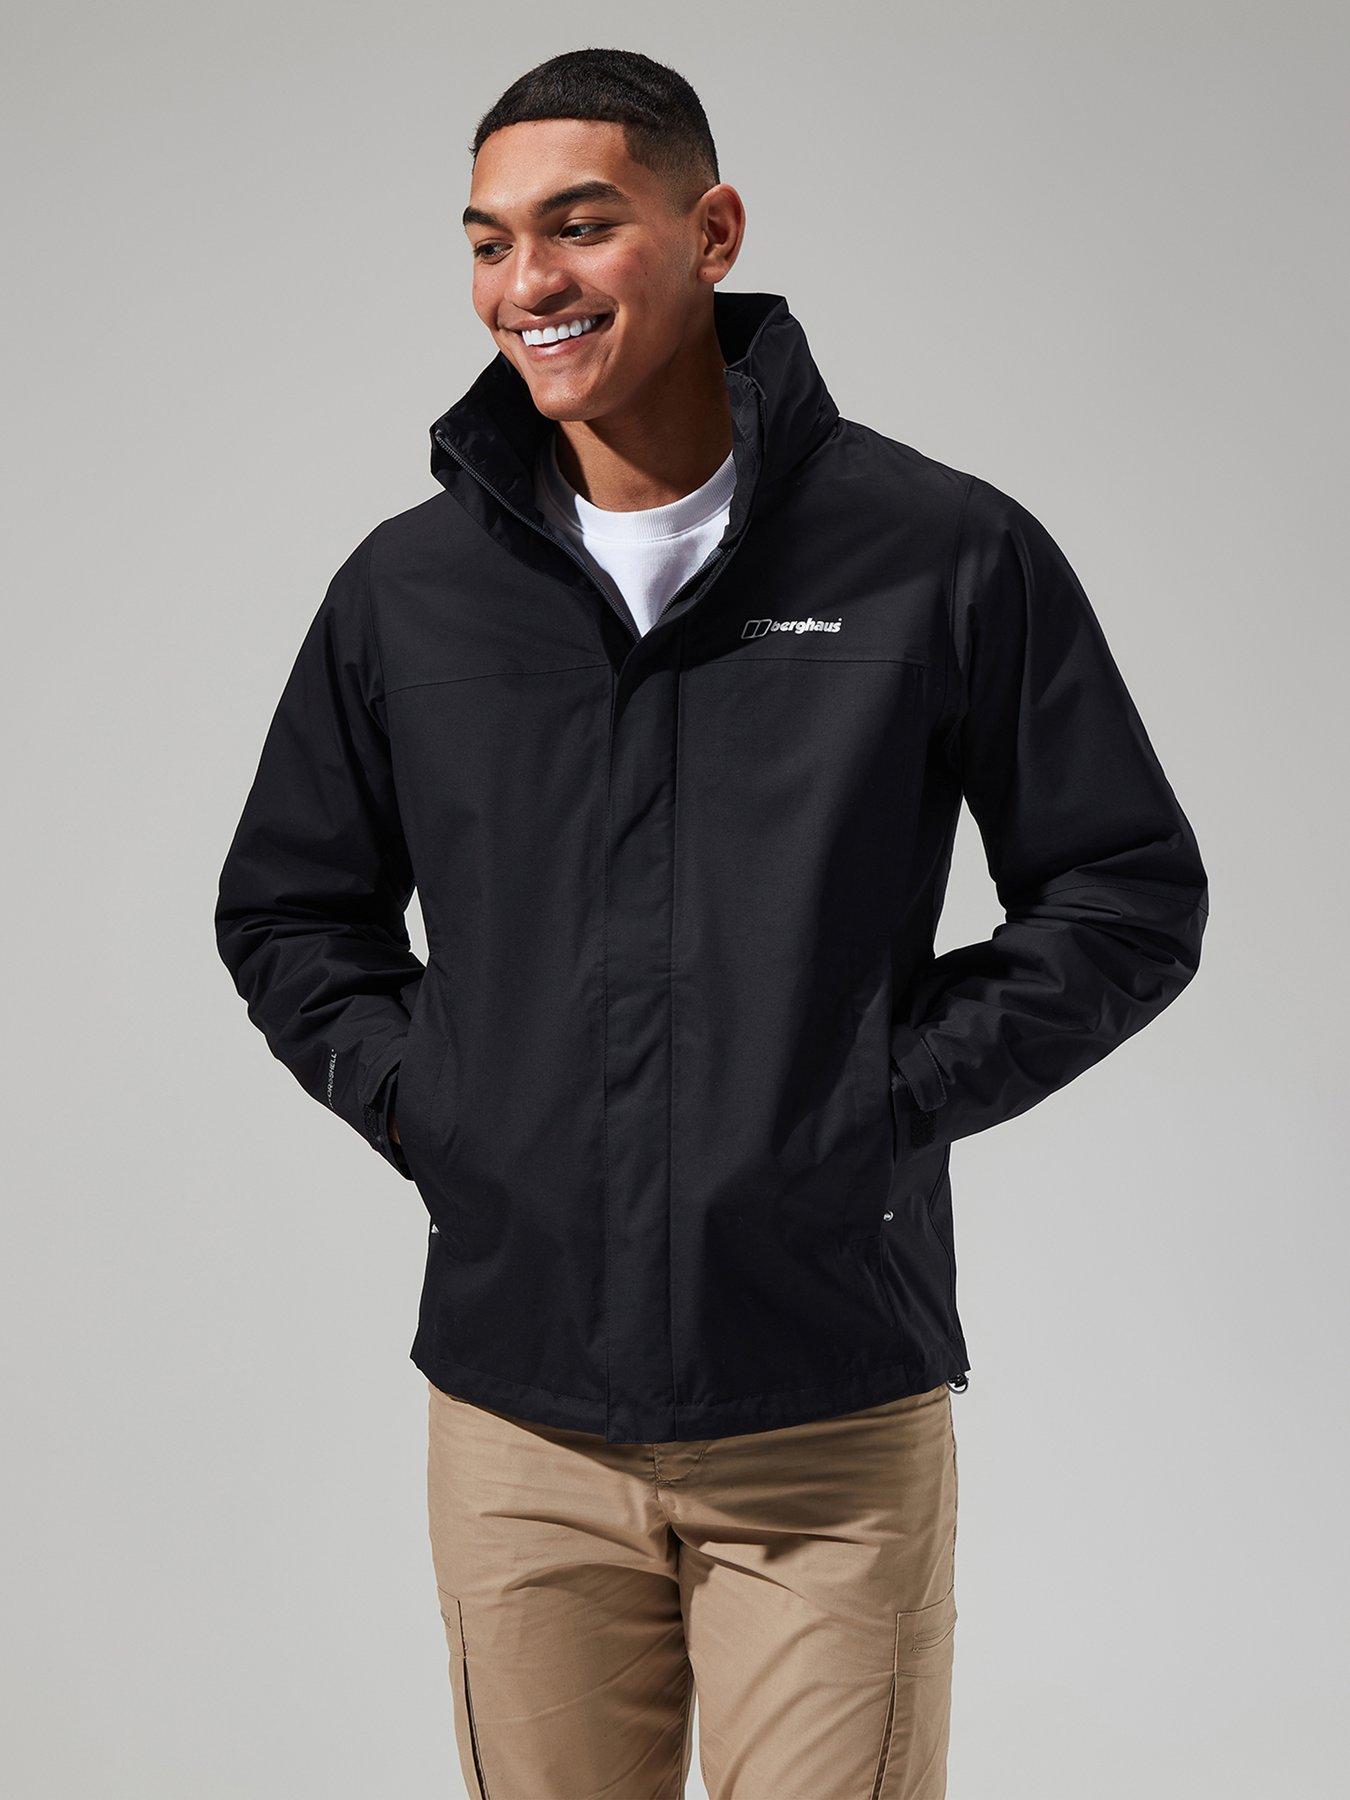 L, Outdoor Jackets, Coats & jackets, Men